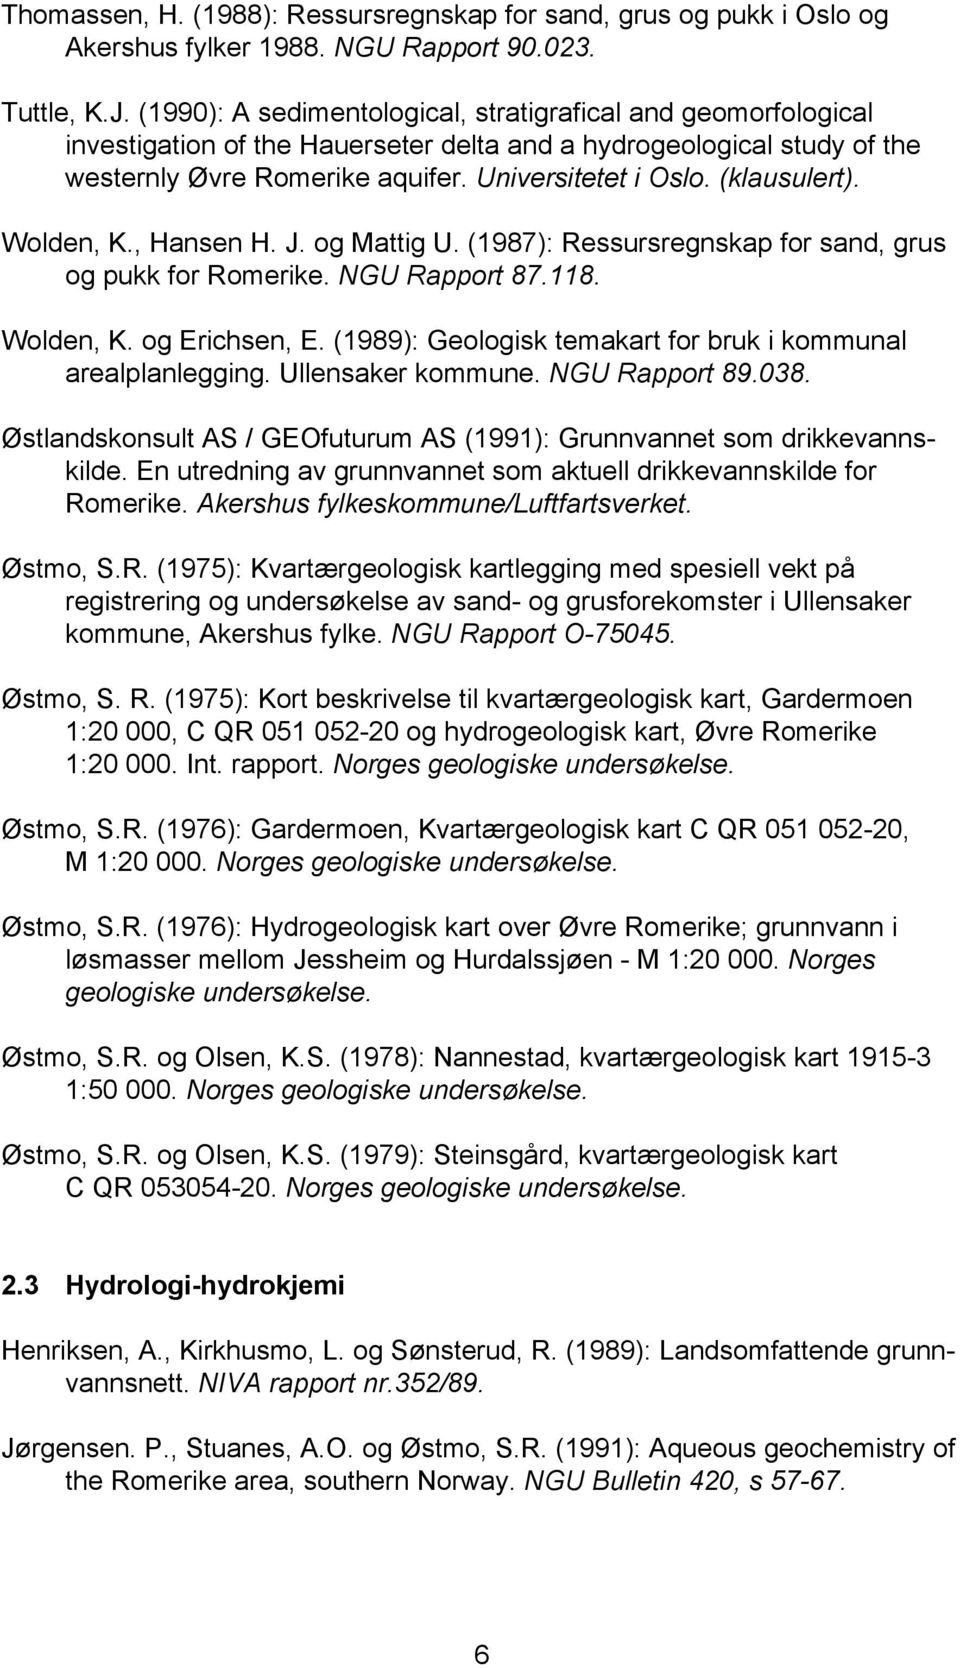 (klausulert). Wolden, K., Hansen H. J. og Mattig U. (1987): Ressursregnskap for sand, grus og pukk for Romerike. NGU Rapport 87.118. Wolden, K. og Erichsen, E.